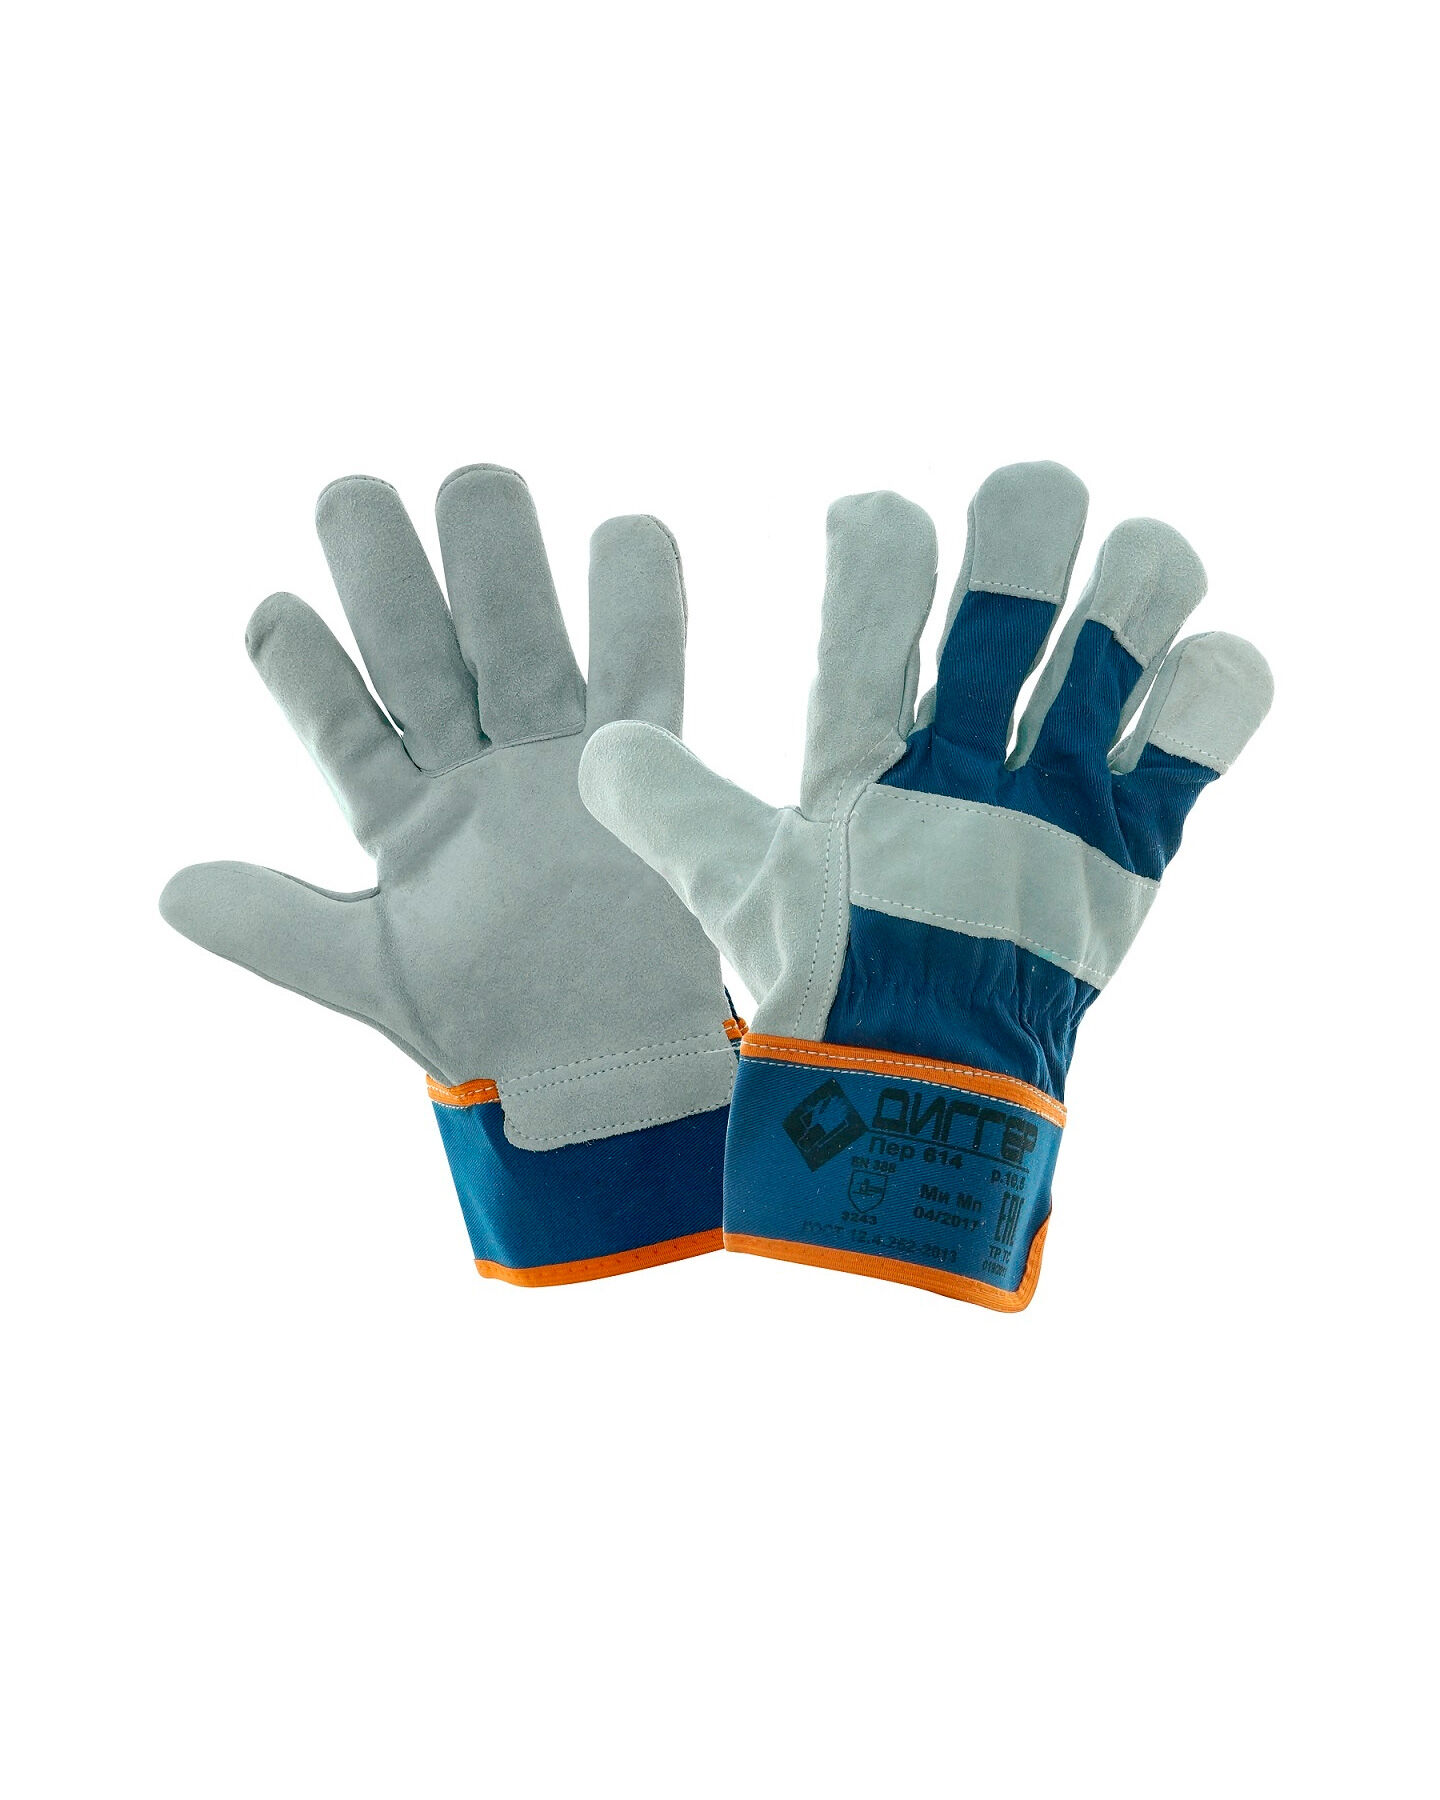 Перчатки ДИГГЕР спилковые комбинированные, серо-голубые р-р. 10,5 в уп. 72 пары (пер 614)